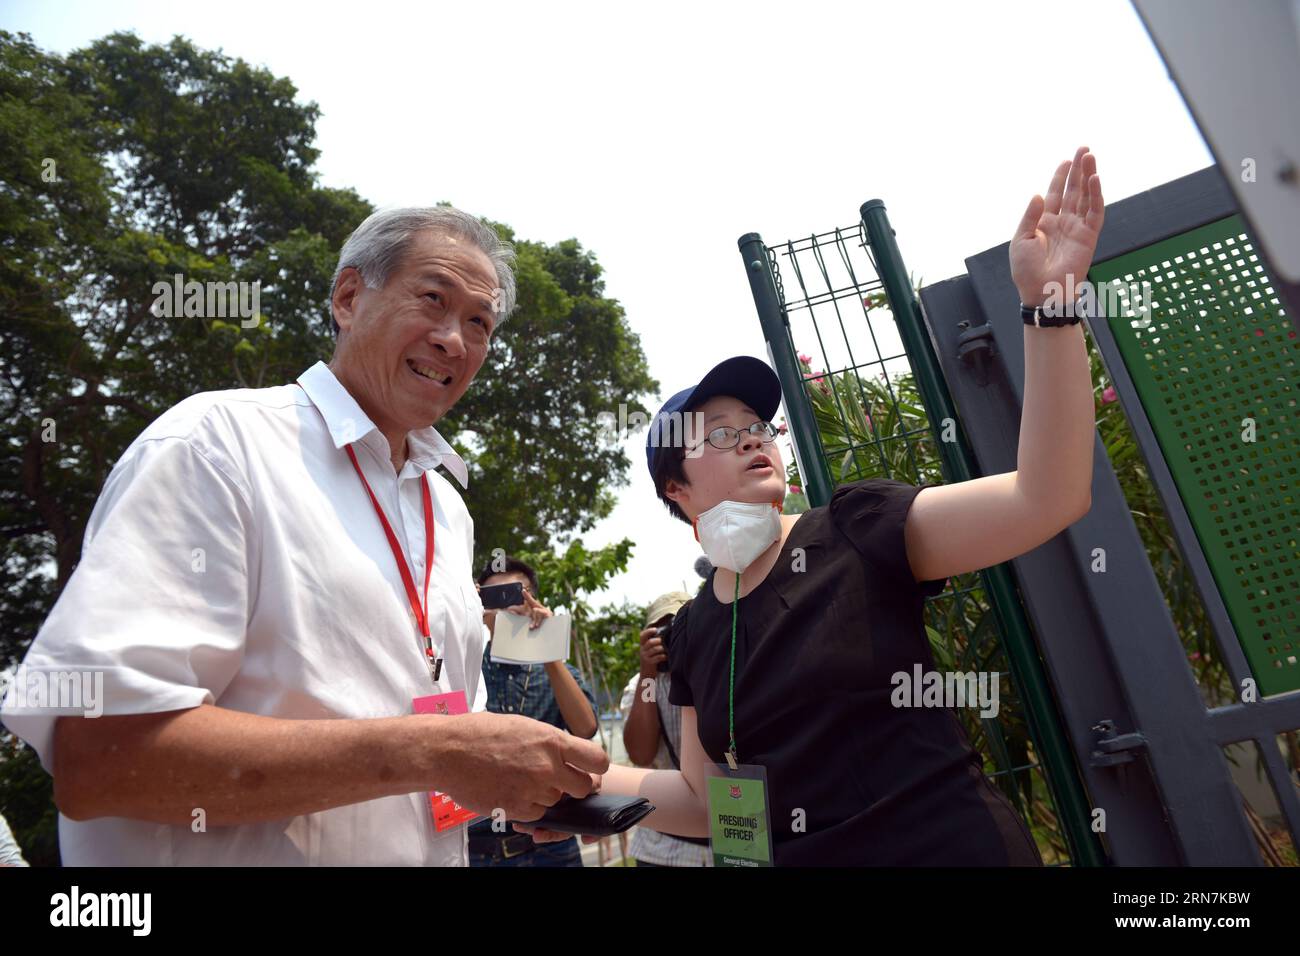 (150911) -- SINGAPOUR, le 11 septembre 2015 -- le ministre de la Défense de Singapour ng Eng Hen (à gauche) arrive pour voter au bureau de vote de l'école primaire Alexandra à Singapour, le 11 septembre 2015. Les Singapouriens de toute la ville-État se sont rendus vendredi à leurs bureaux de vote désignés pour voter lors d'une élection générale. ) SINGAPOUR-ELECTIONS GÉNÉRALES-VOTE ThenxChihxWey PUBLICATIONxNOTxINxCHN 150911 Singapour sept 11 2015 Singapour S Ministres de la Défense NG Tight Hen l arrive à VOTER AU poste de vote de l'école primaire Alexandra à Singapour sept 11 2015 Singapouriens de l'État de la ville sont allés à leur Polli désigné Banque D'Images